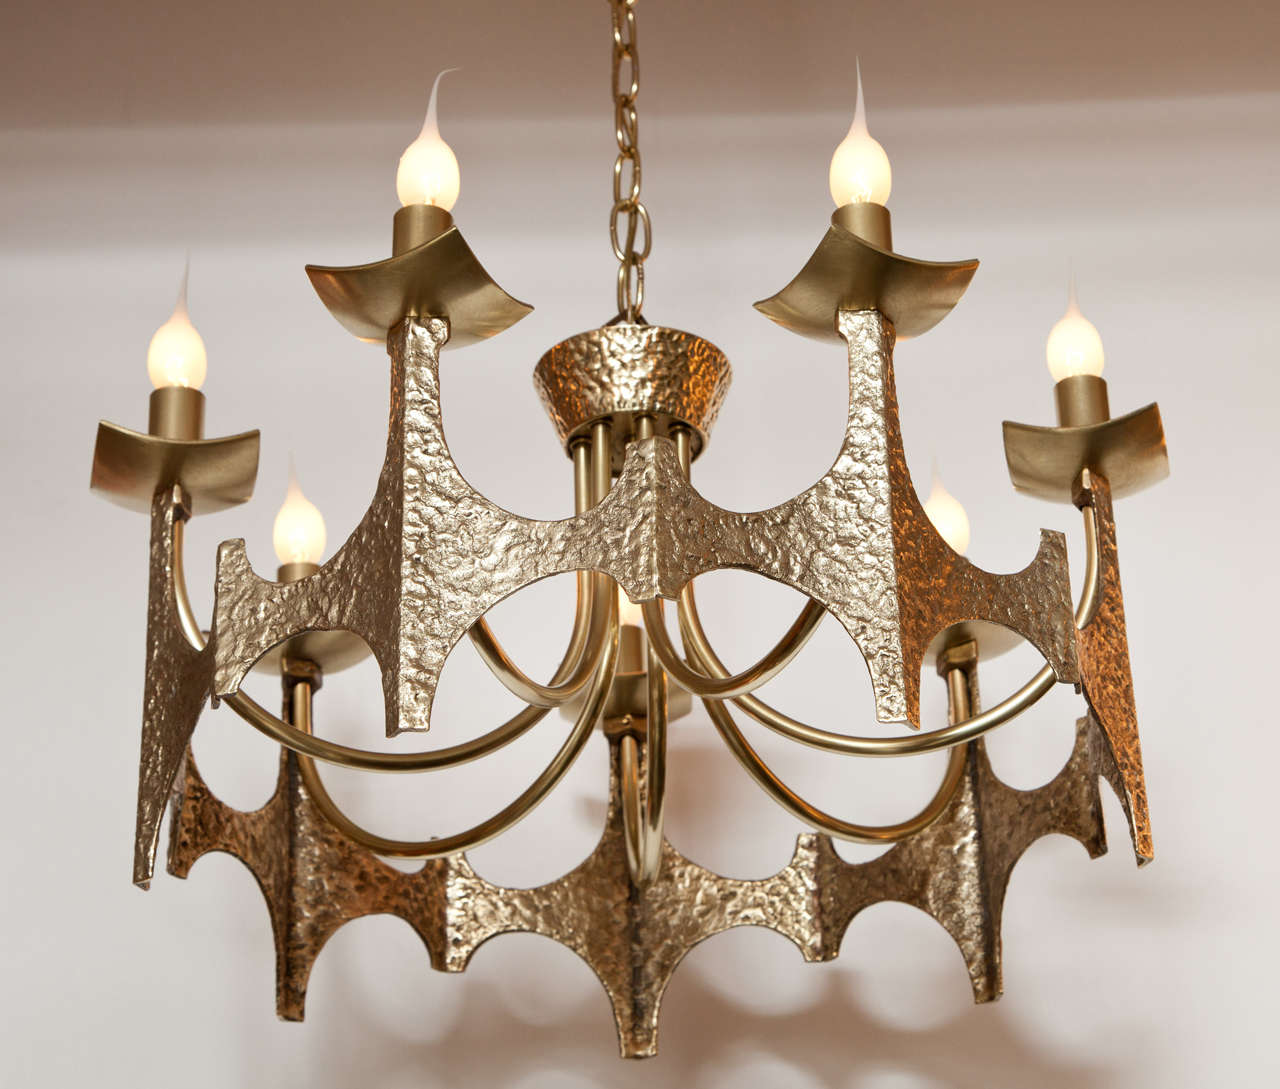 Decorative Brutalist brass chandelier, circa 1950.